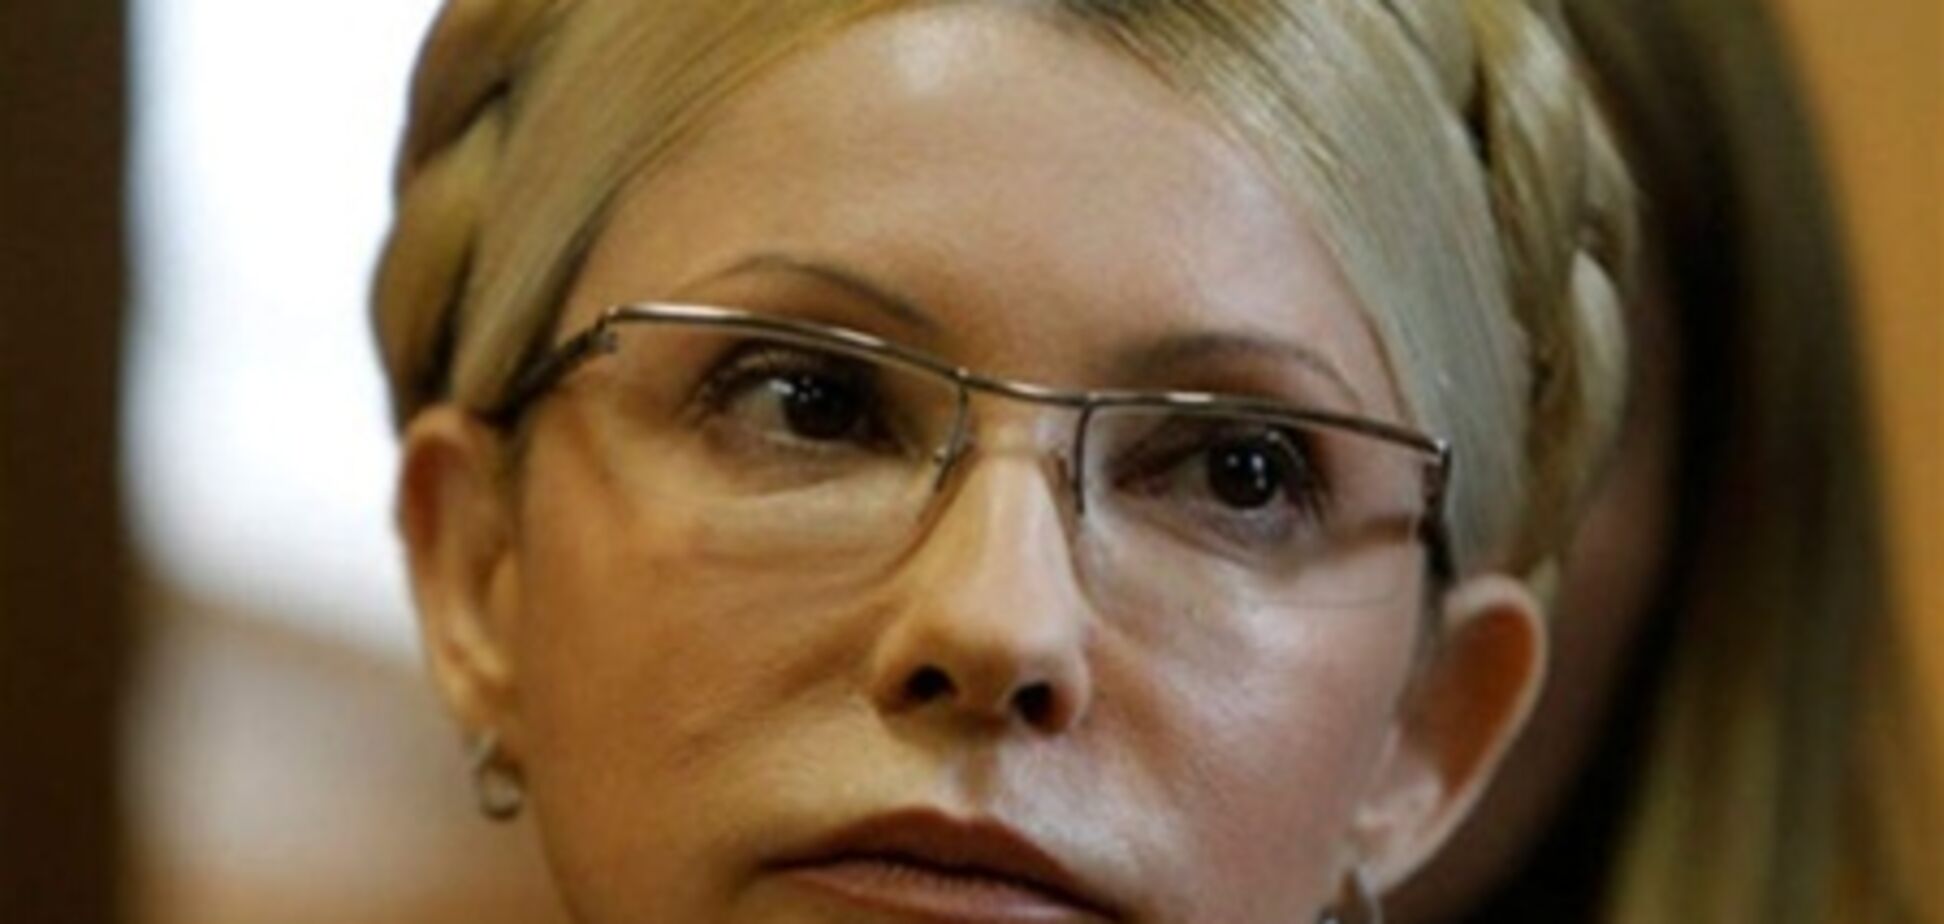 Визволення Тимошенко хочуть регіонали, а не опозиція - депутат